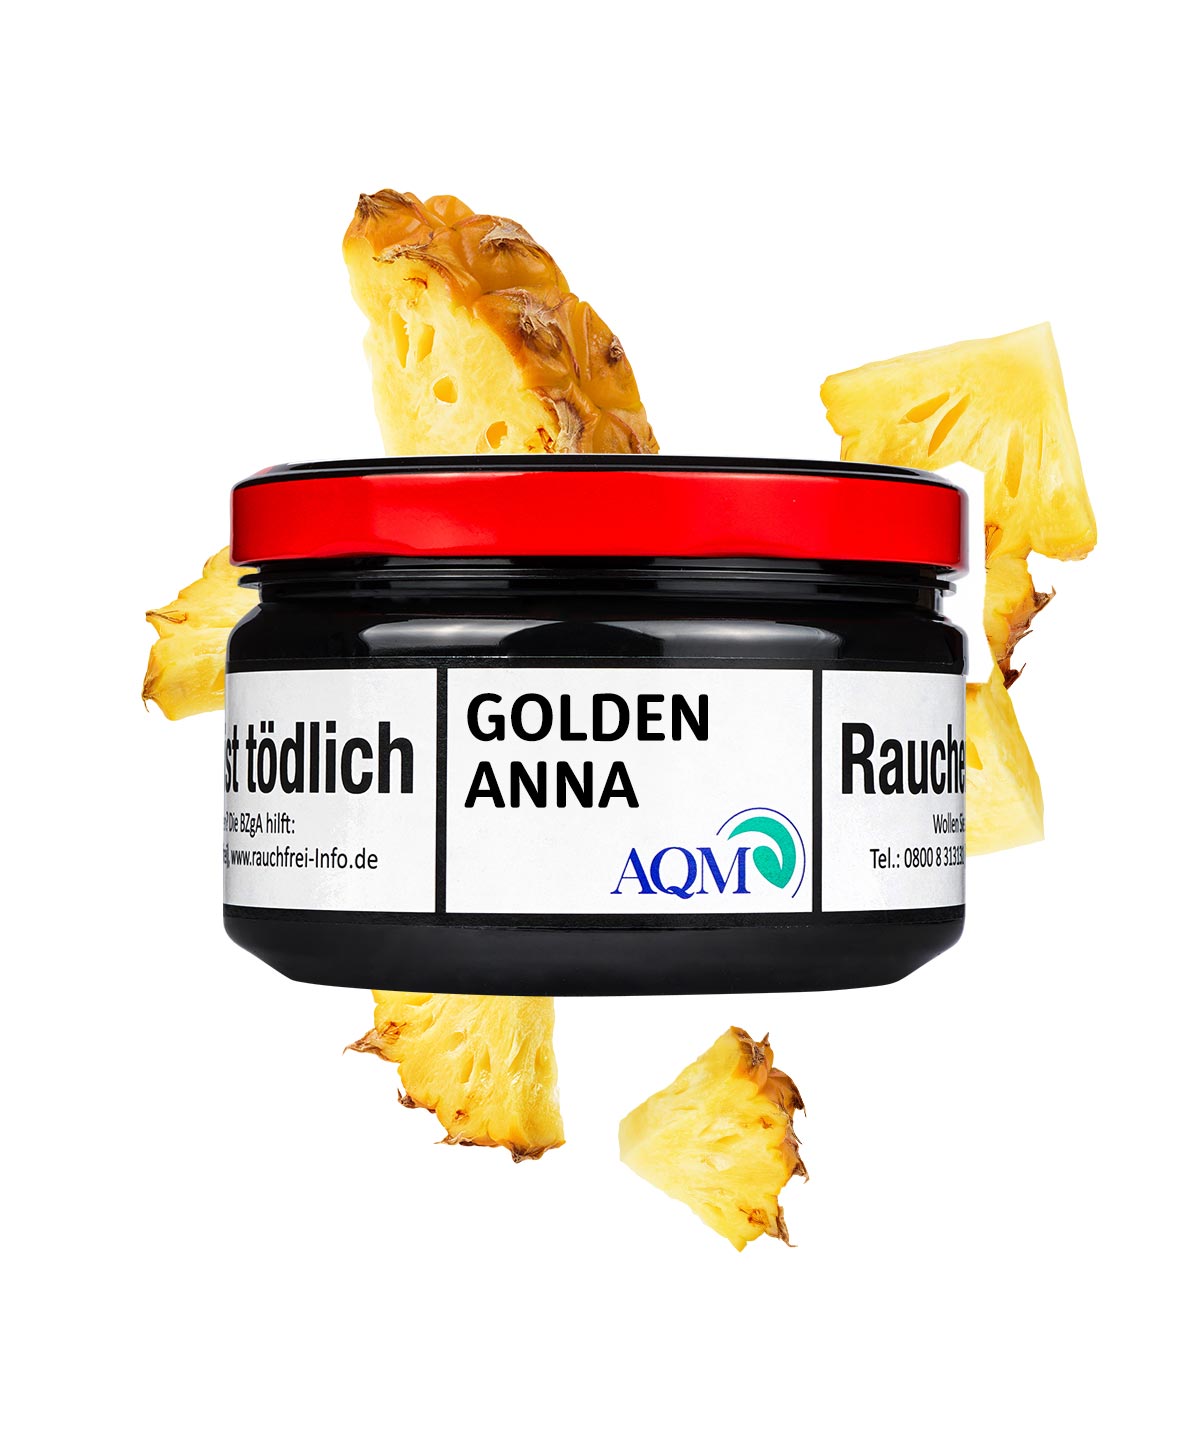 Aqua Mentha Golden Anna 100g Pfeifentabak